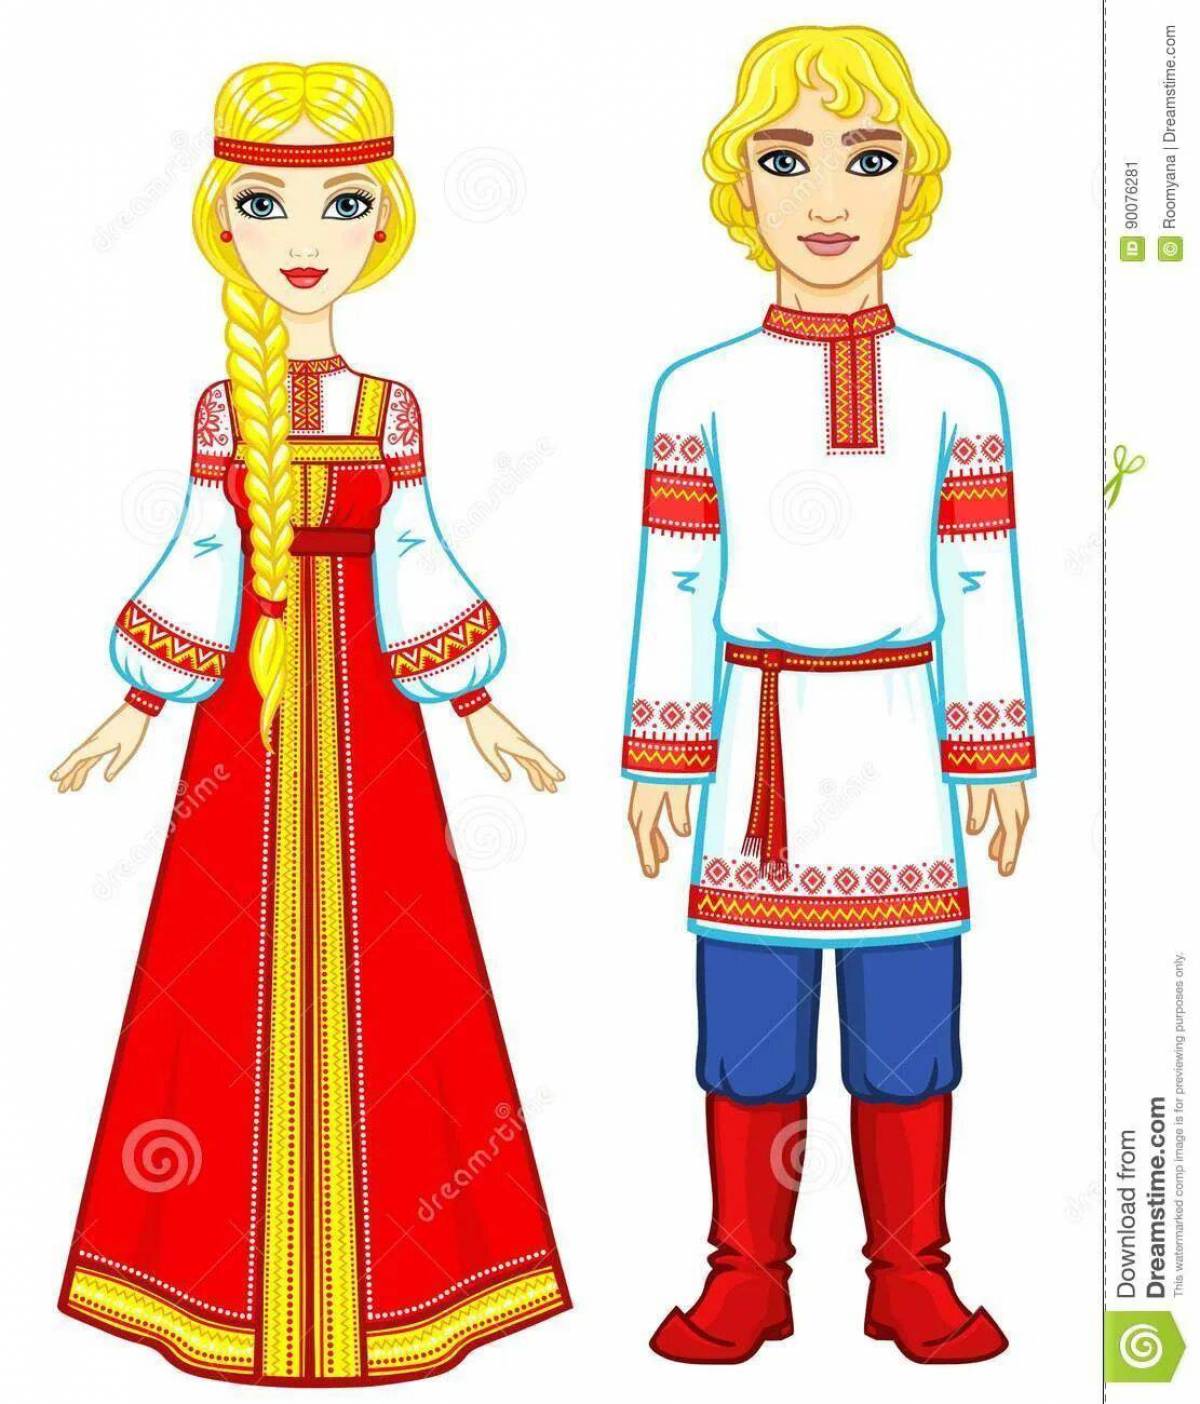 русский национальный костюм фото для детей